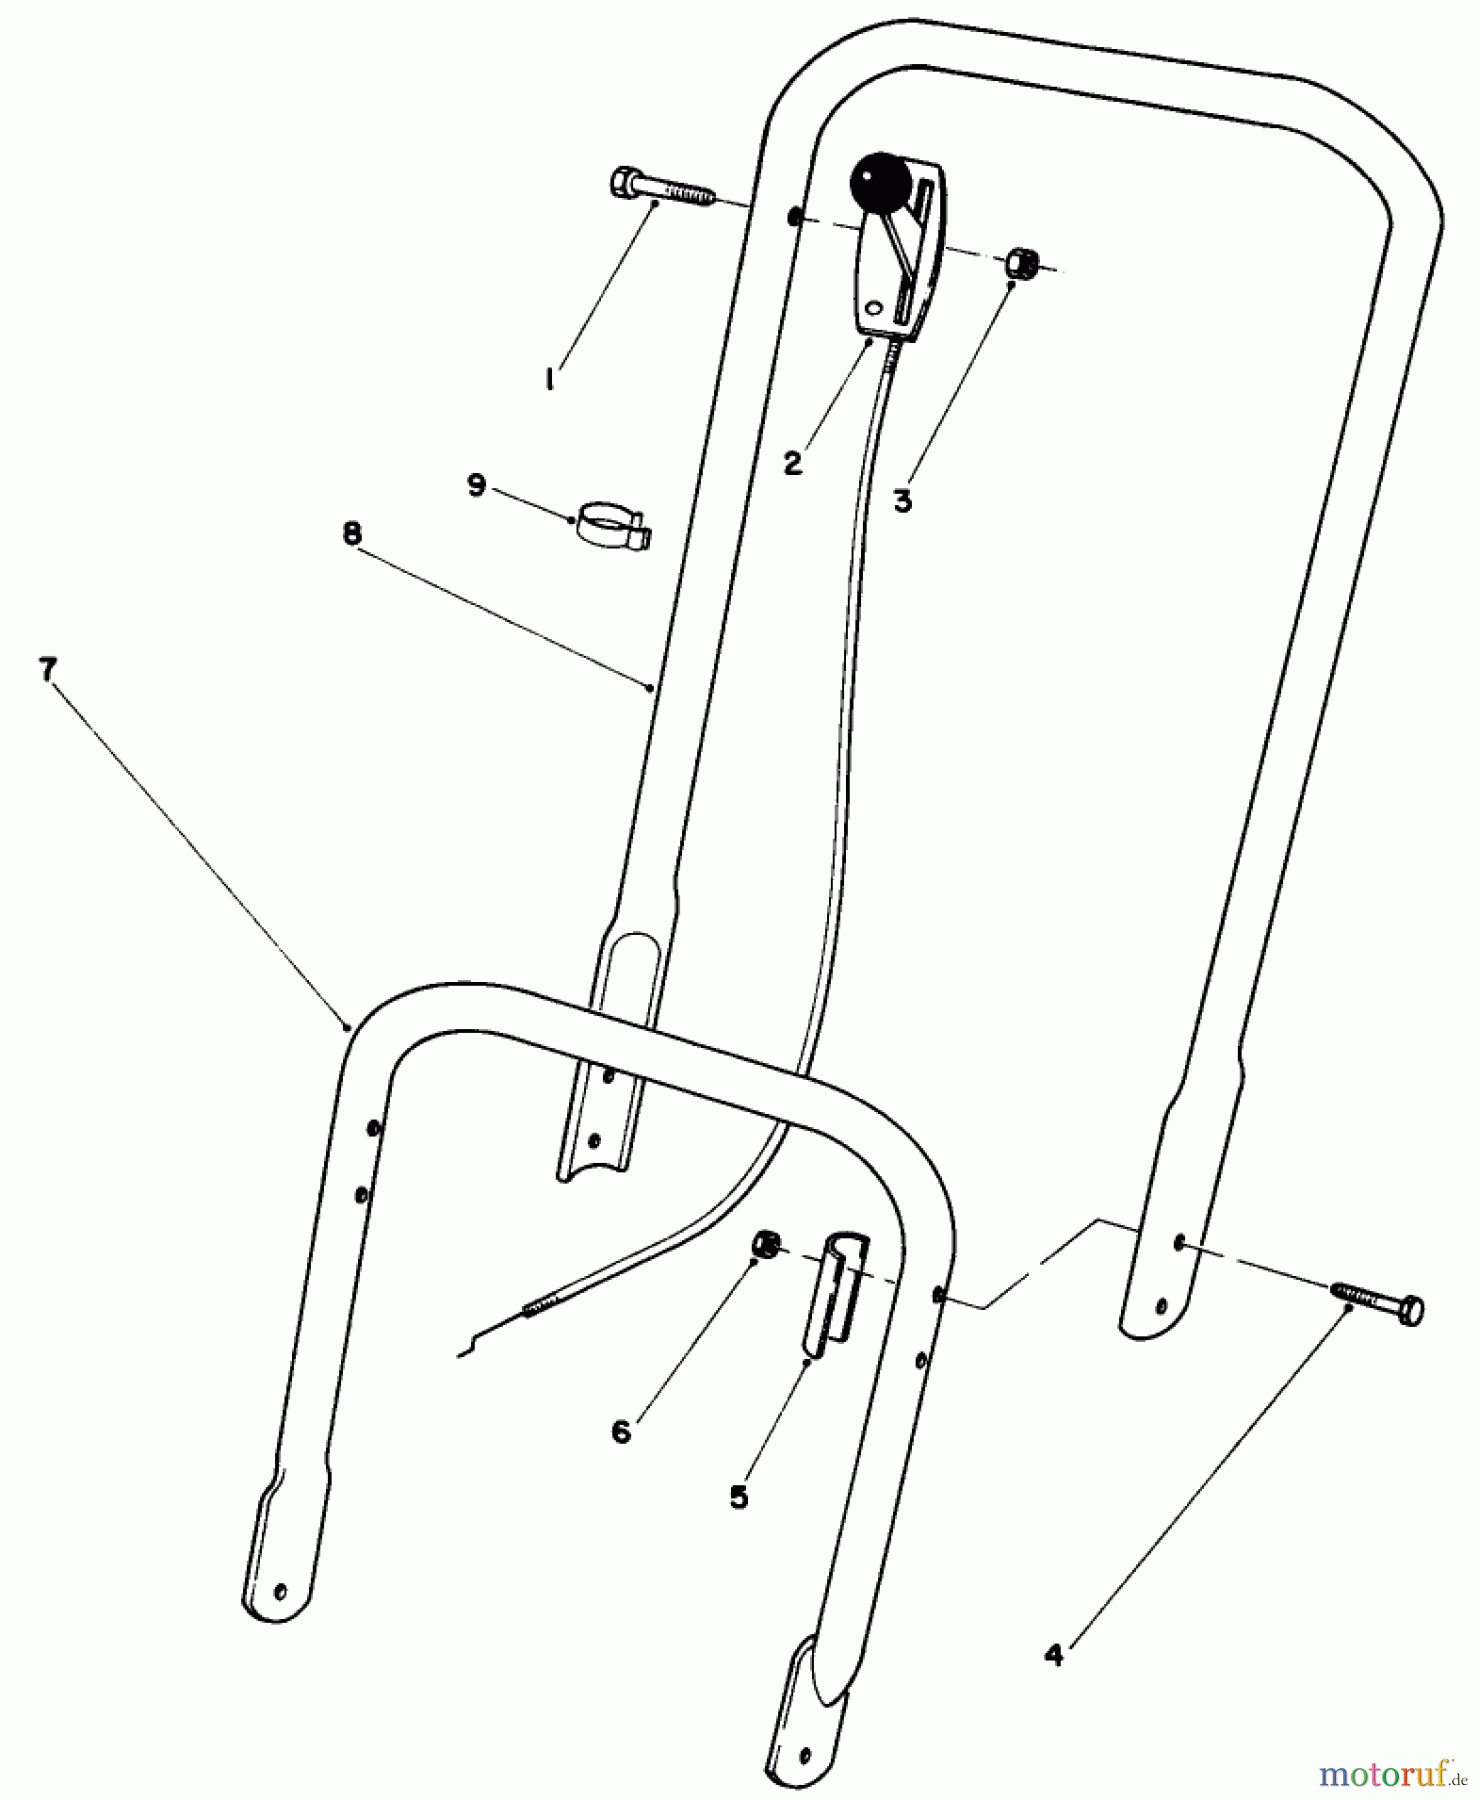  Toro Neu Mowers, Walk-Behind Seite 2 22005 - Toro Lawnmower, 1988 (8000001-8999999) HANDLE ASSEMBLY